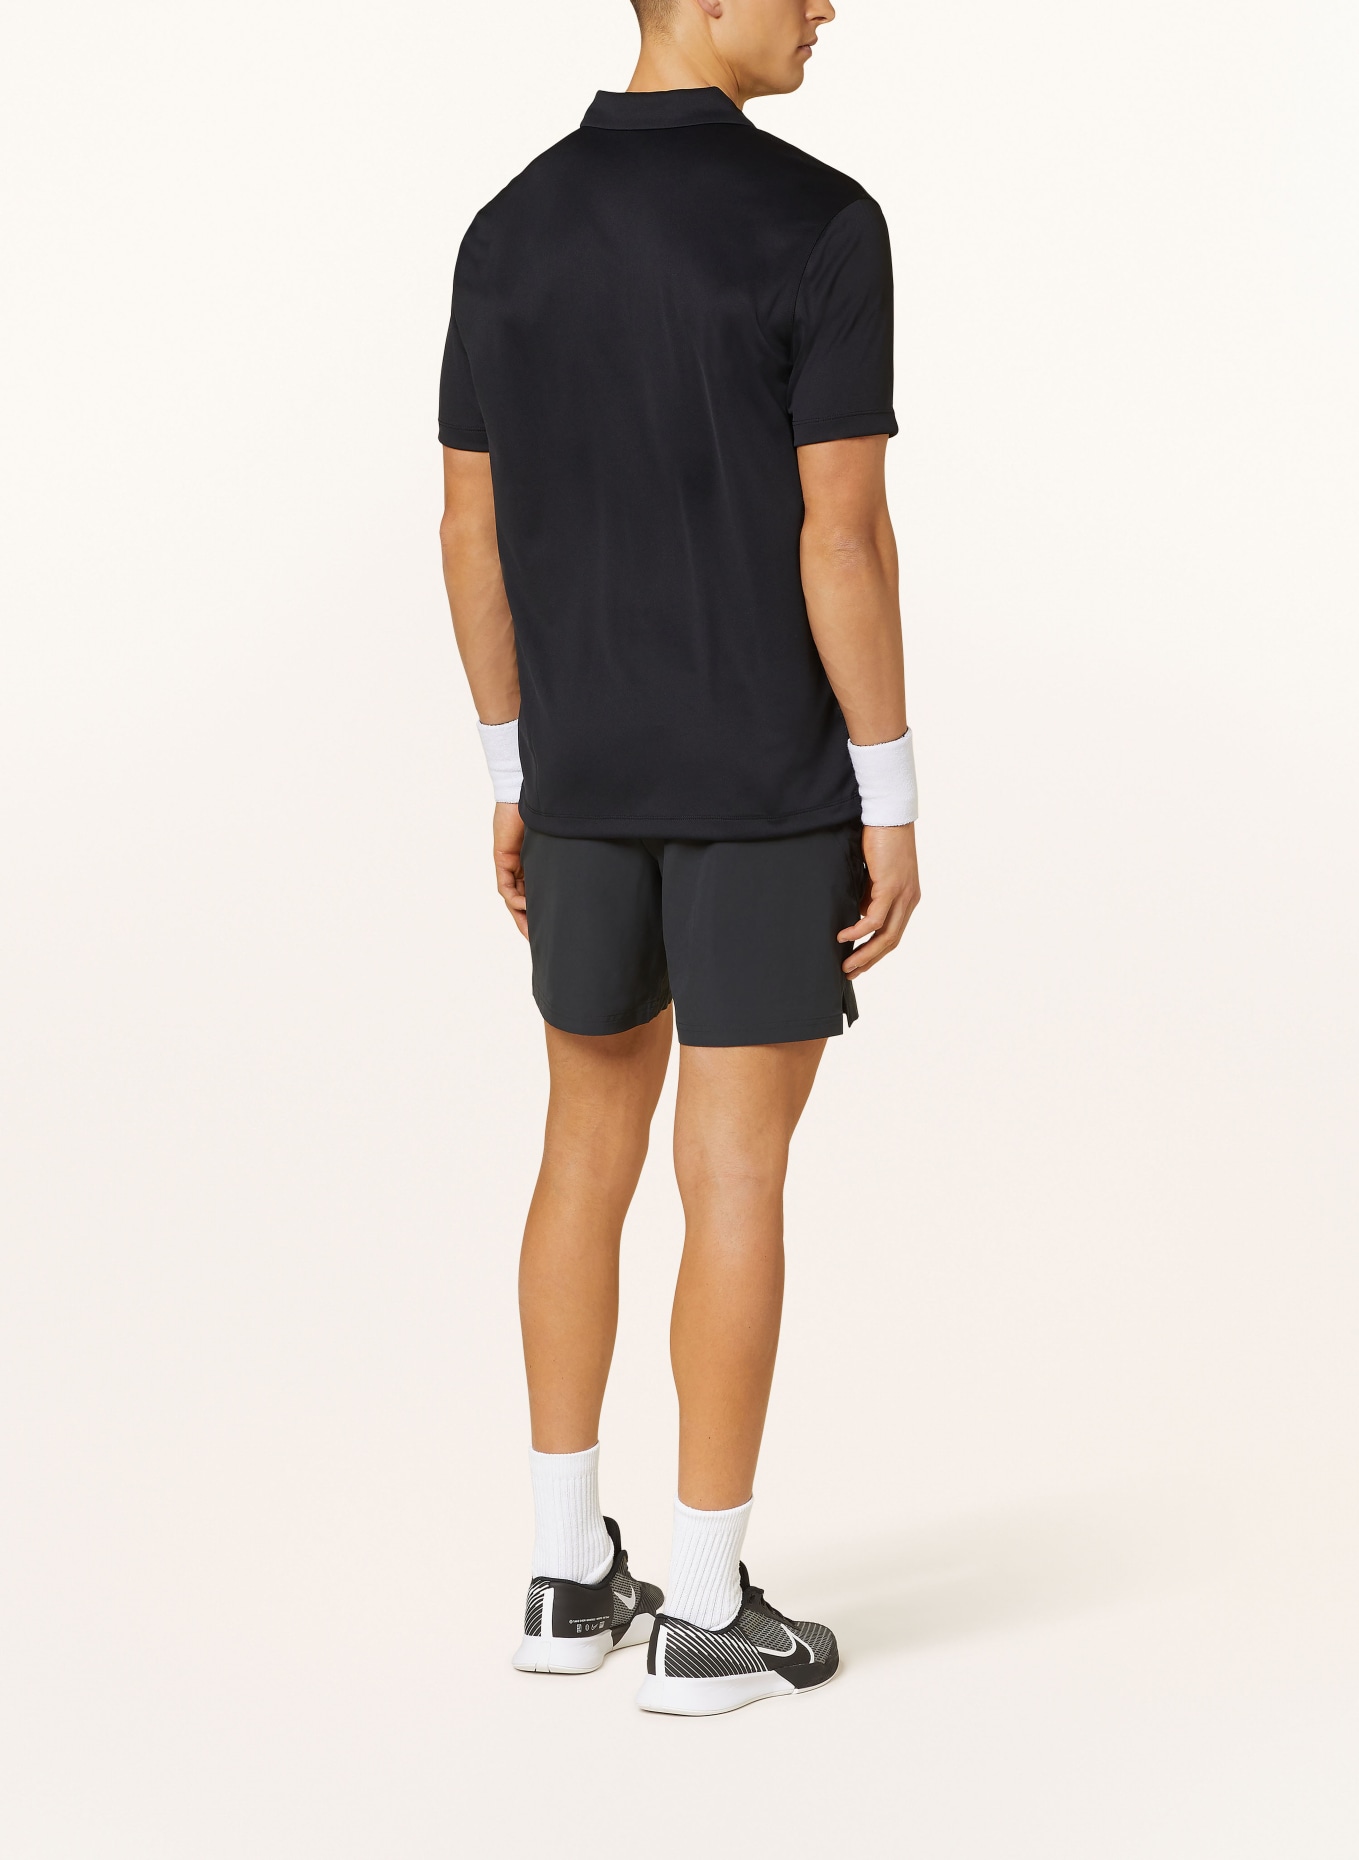 Nike Tennis shorts COURT ADVANTAGE, Color: BLACK (Image 3)